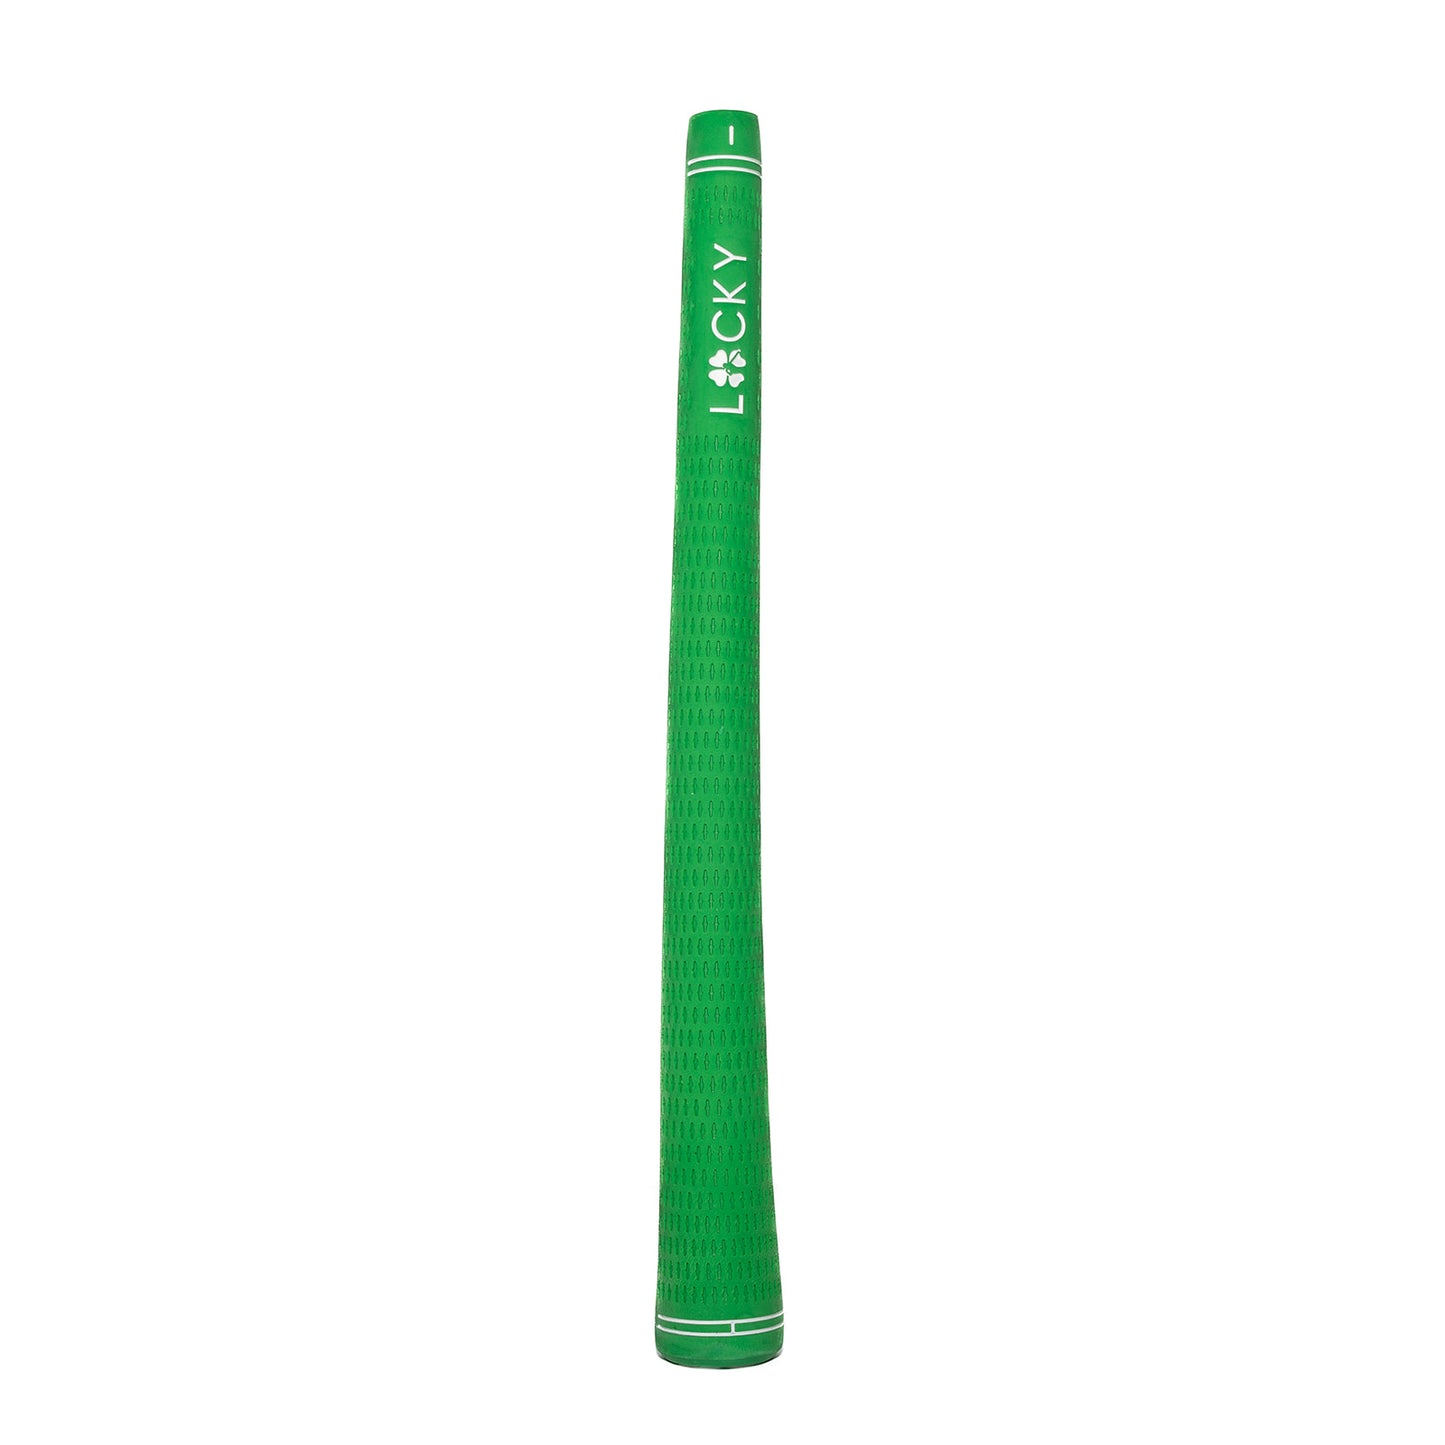 Lucky Golf Tour Performance Clover Grips (Green)